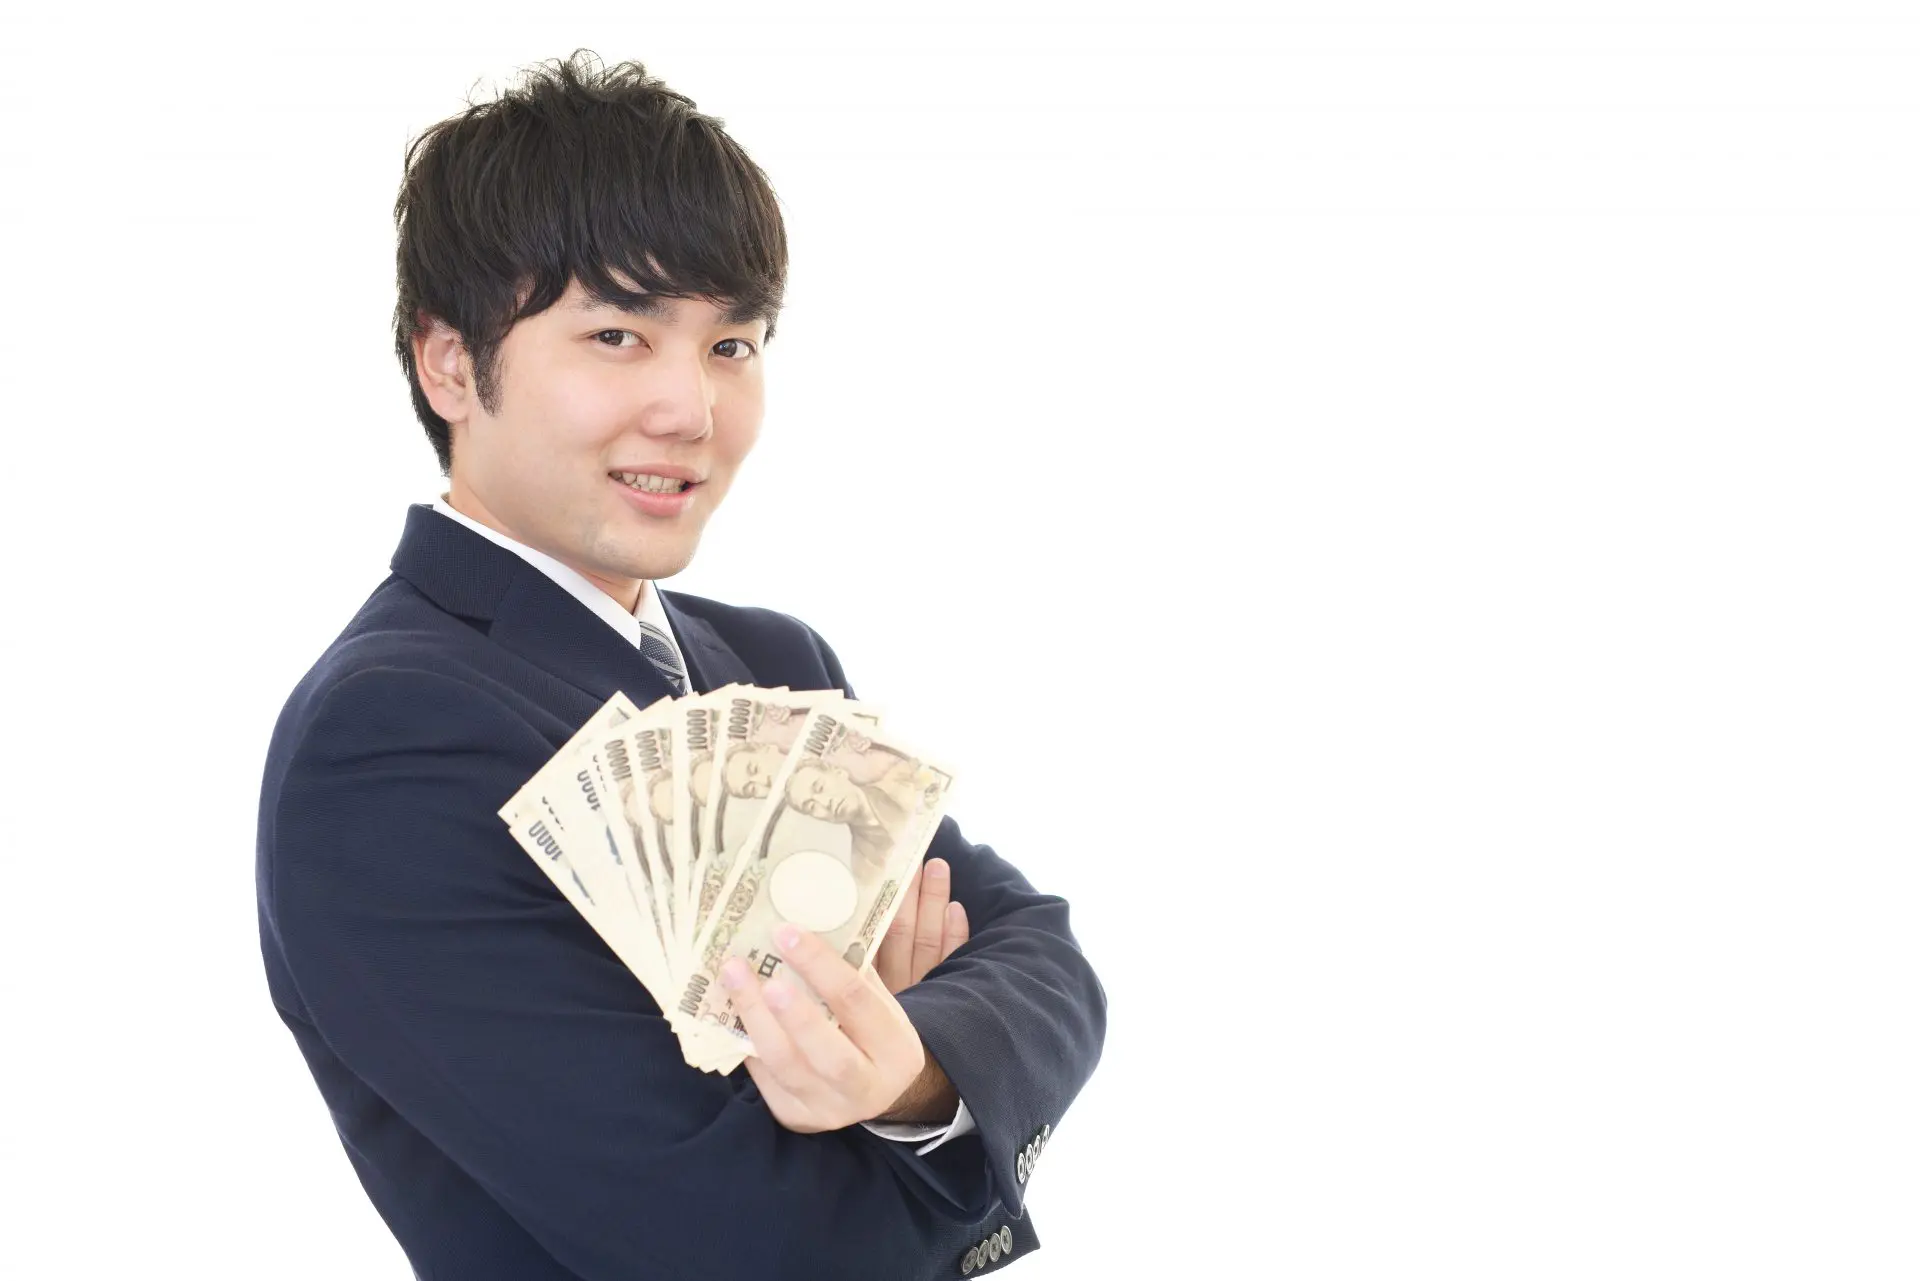 スーツ姿の若い男性が腕を組んだ状態で左手に扇型に広げた1万円札を持っている